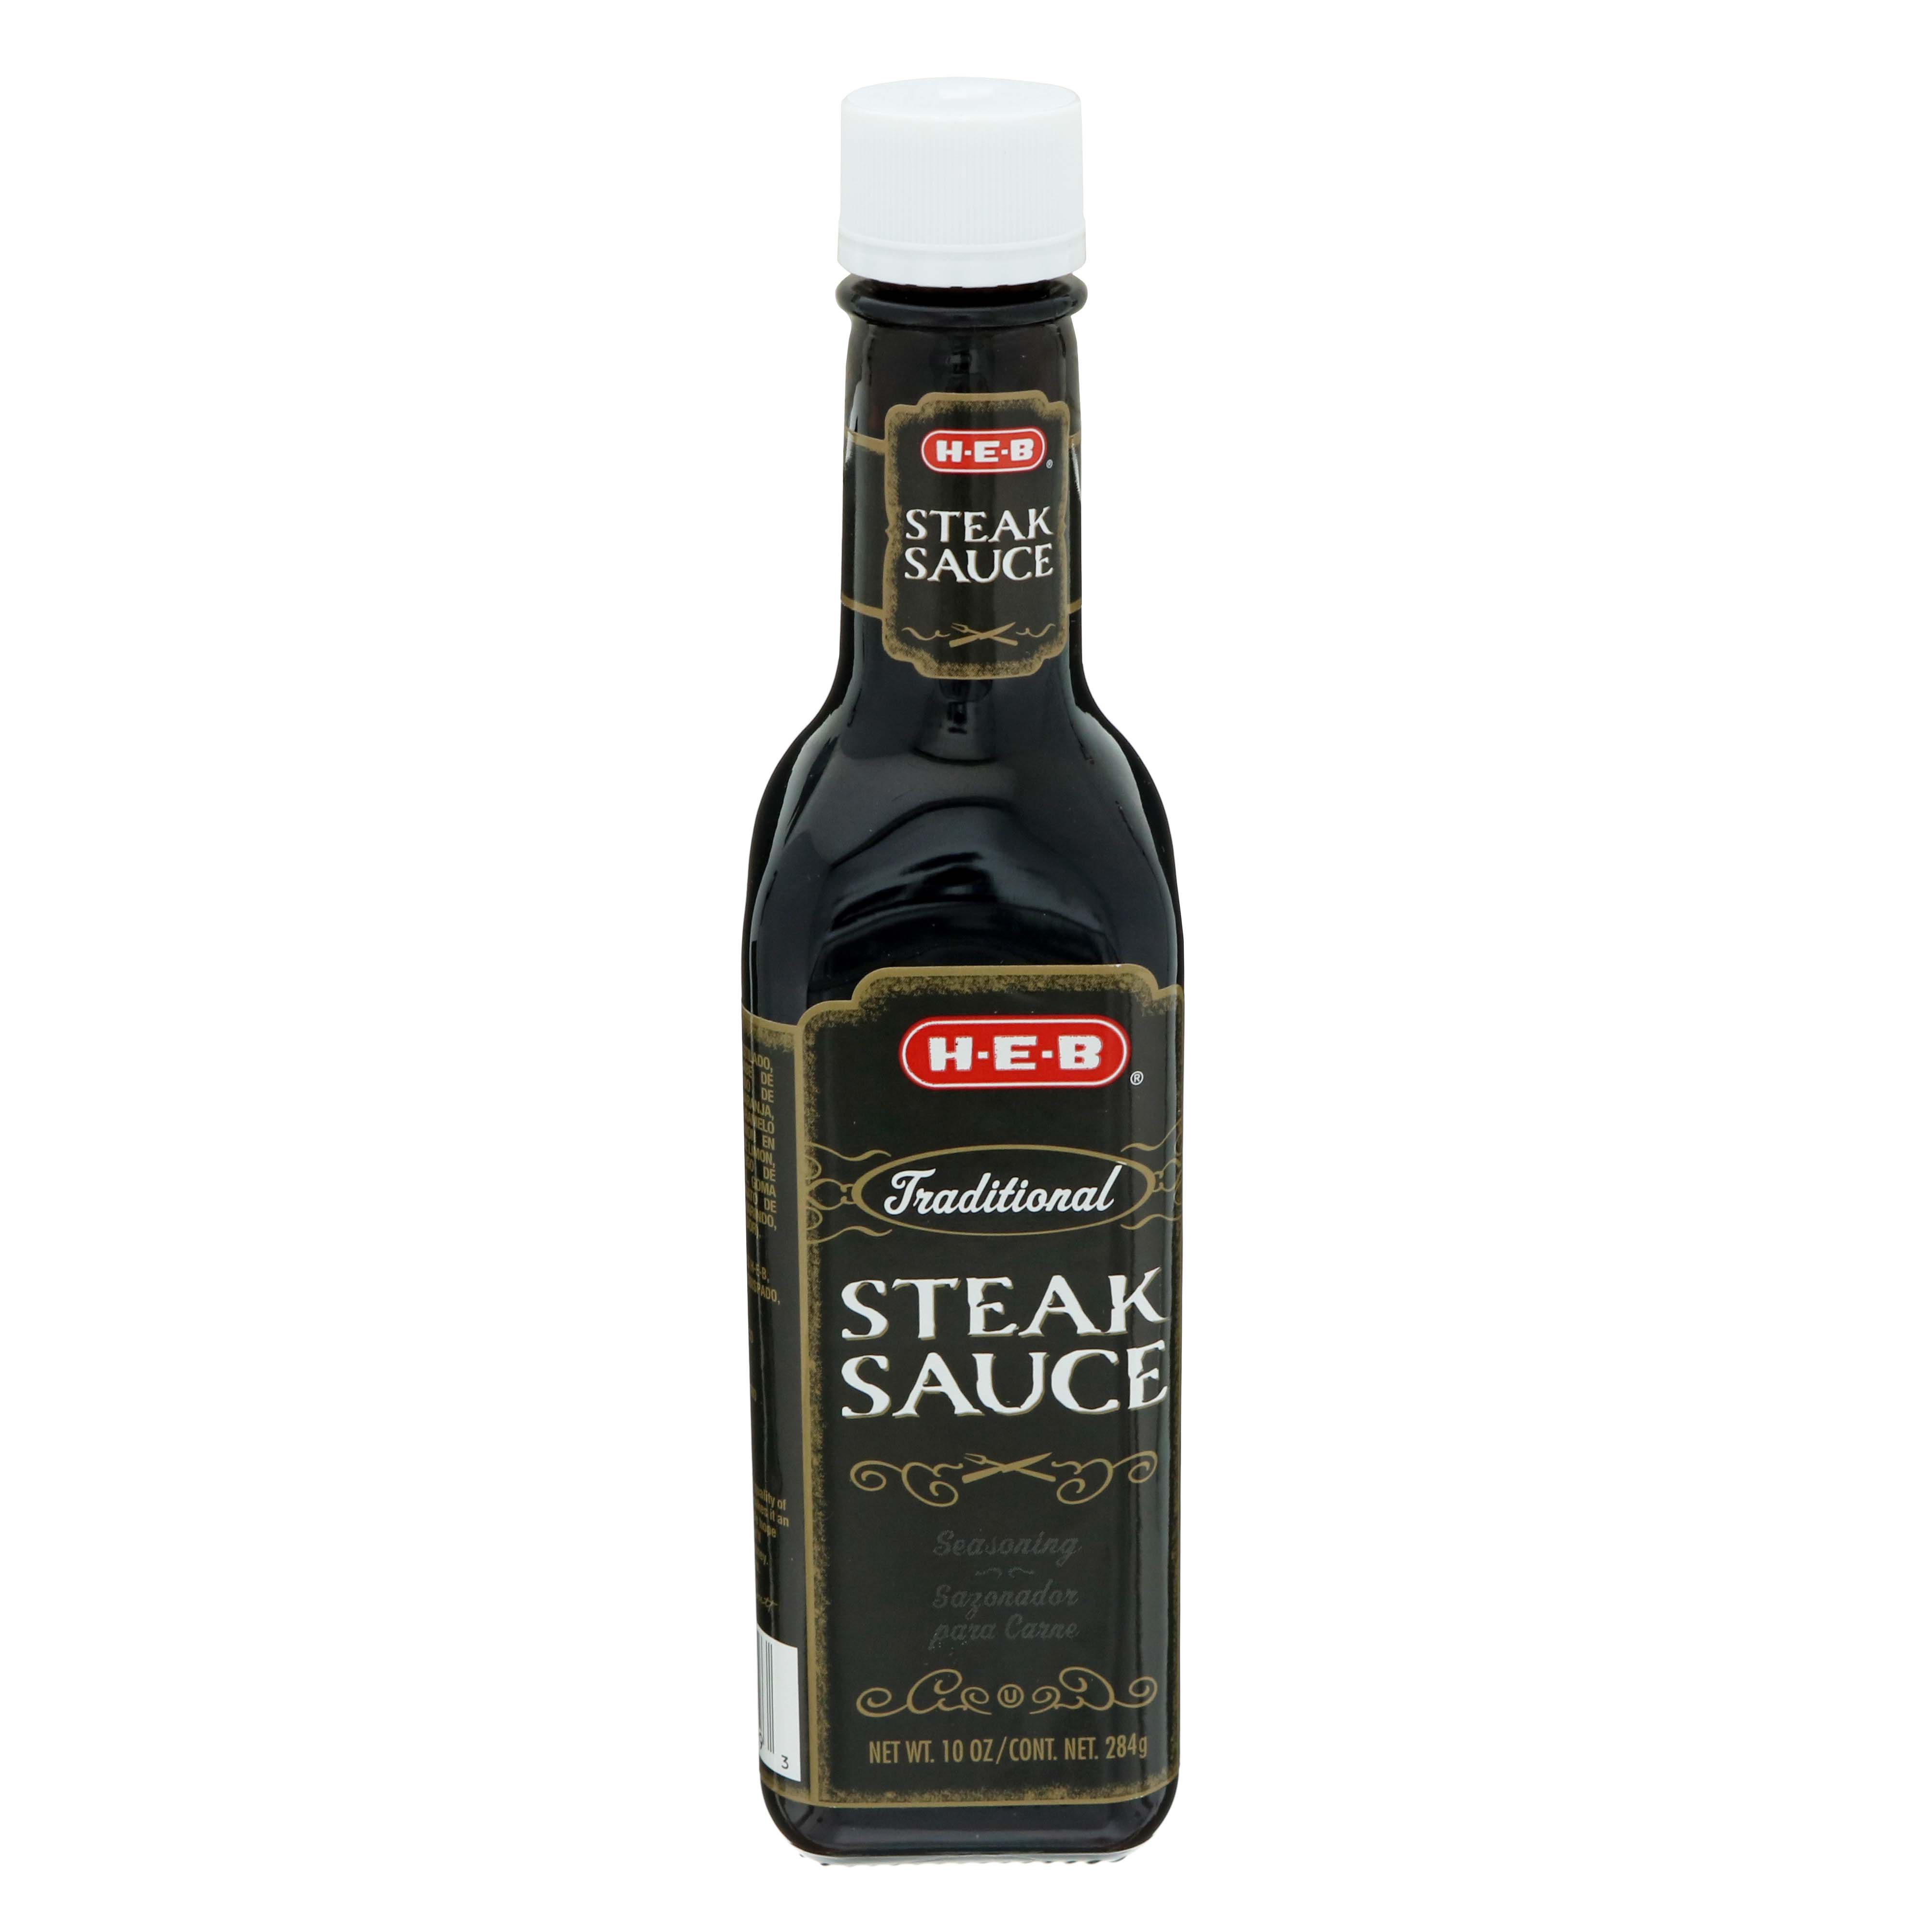 A1 Steak Sauce, Supreme Garlic, Shop